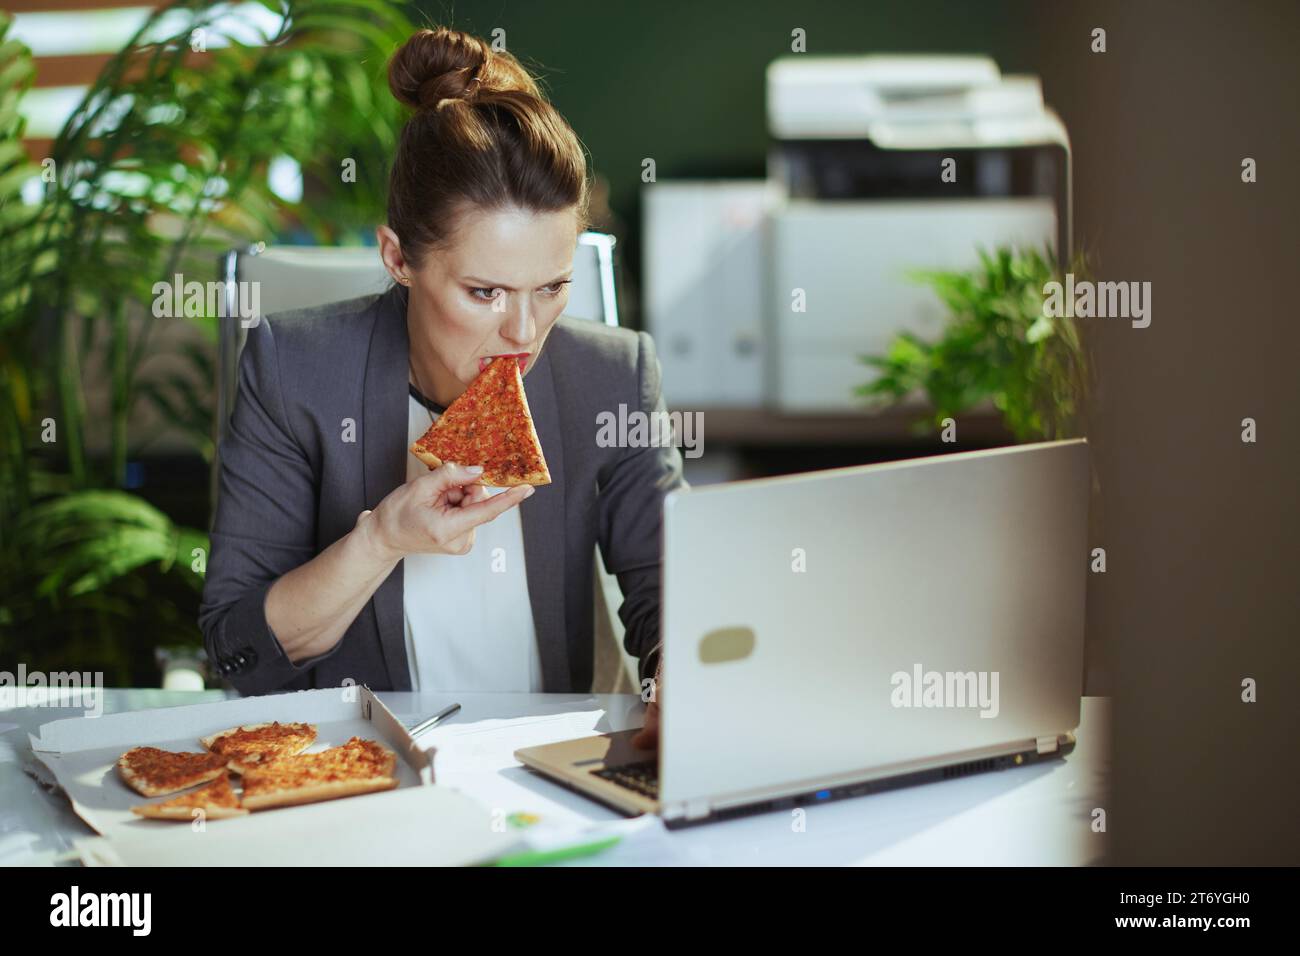 Lieu de travail durable. femme moderne d'âge moyen travailleur dans un costume d'affaires gris dans le bureau vert moderne avec pizza et ordinateur portable. Banque D'Images